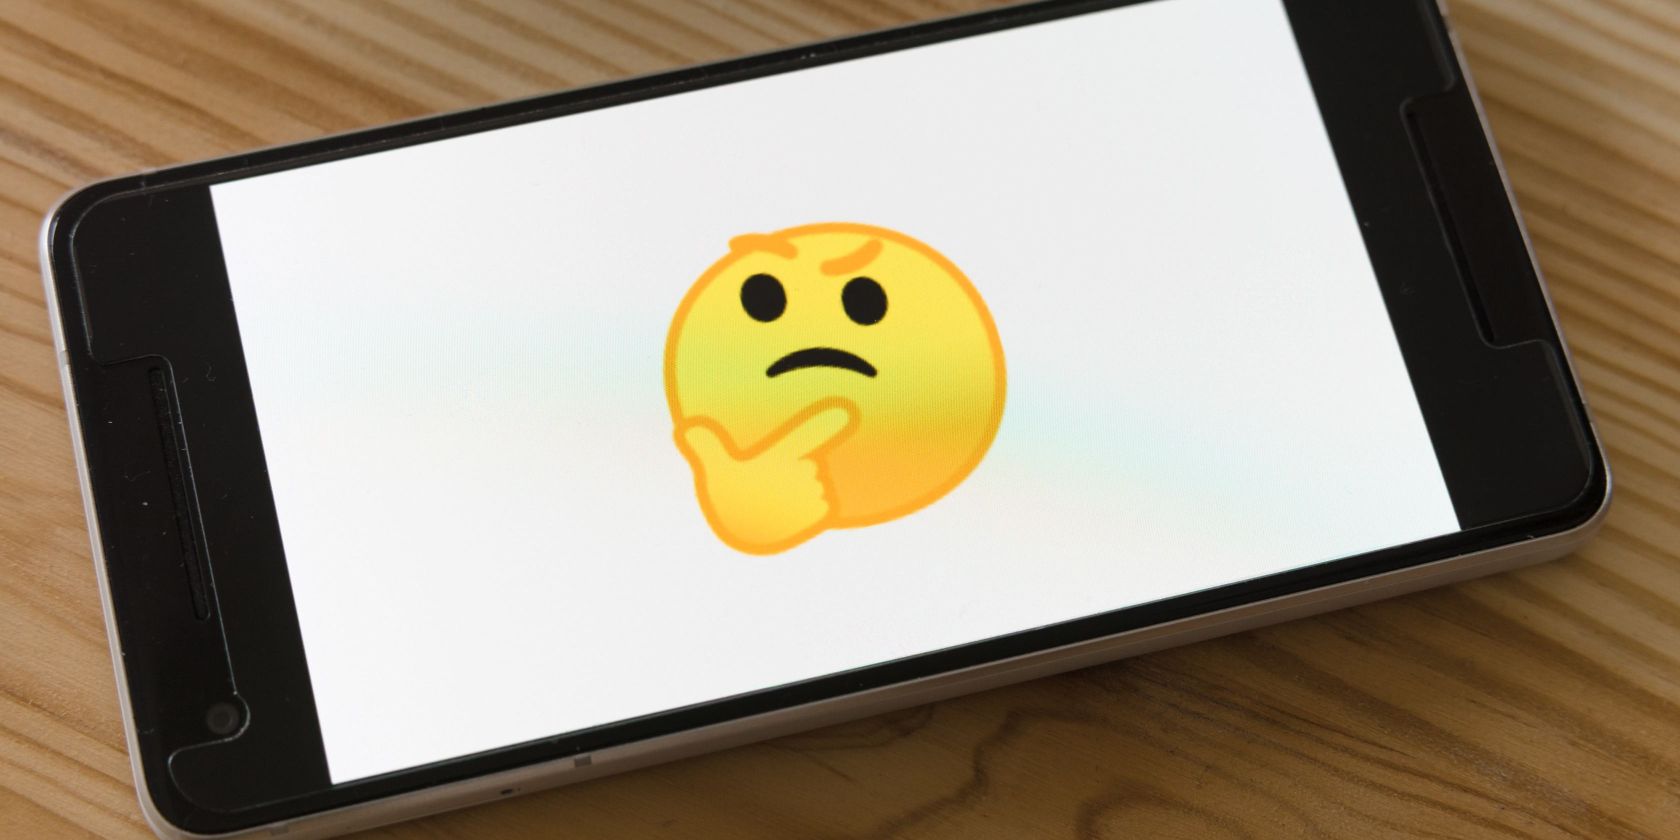 emoji on iphone